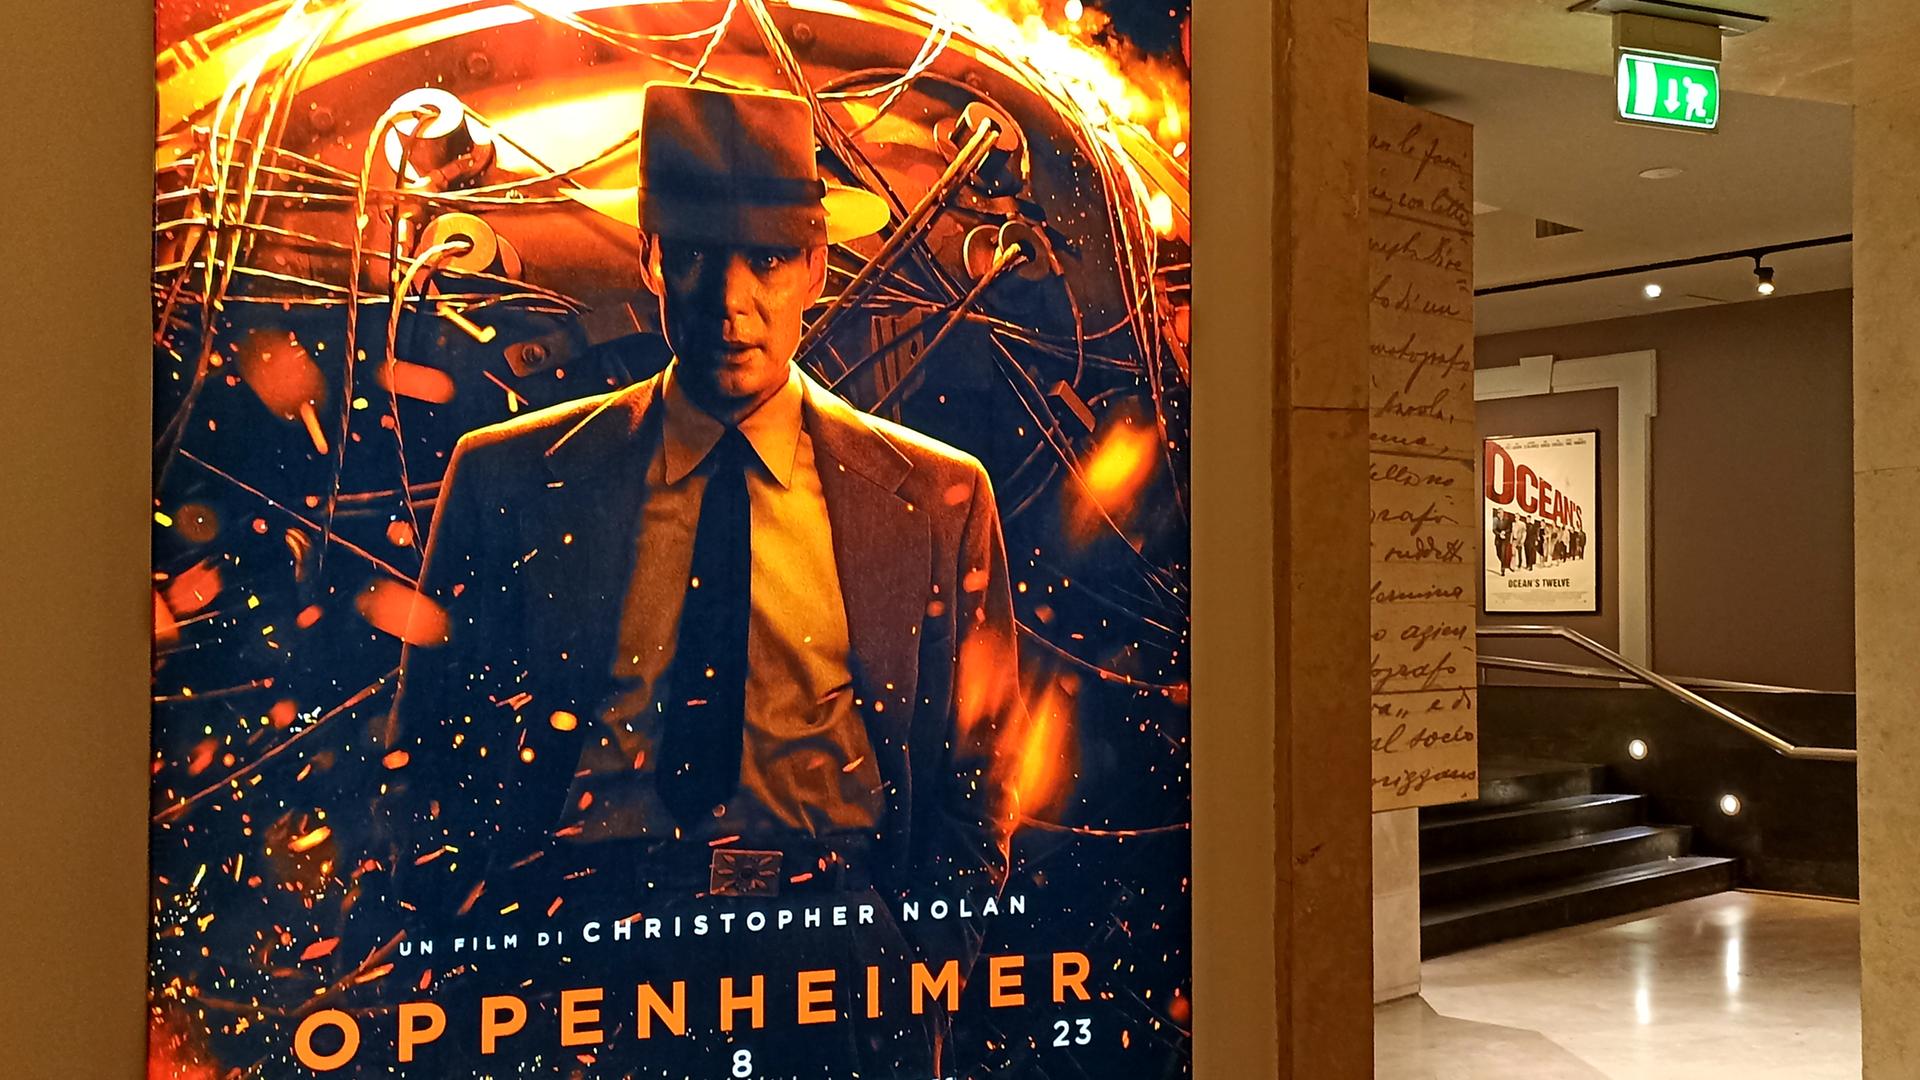 Plakat des Films "Oppenheimer" in einem Kino.